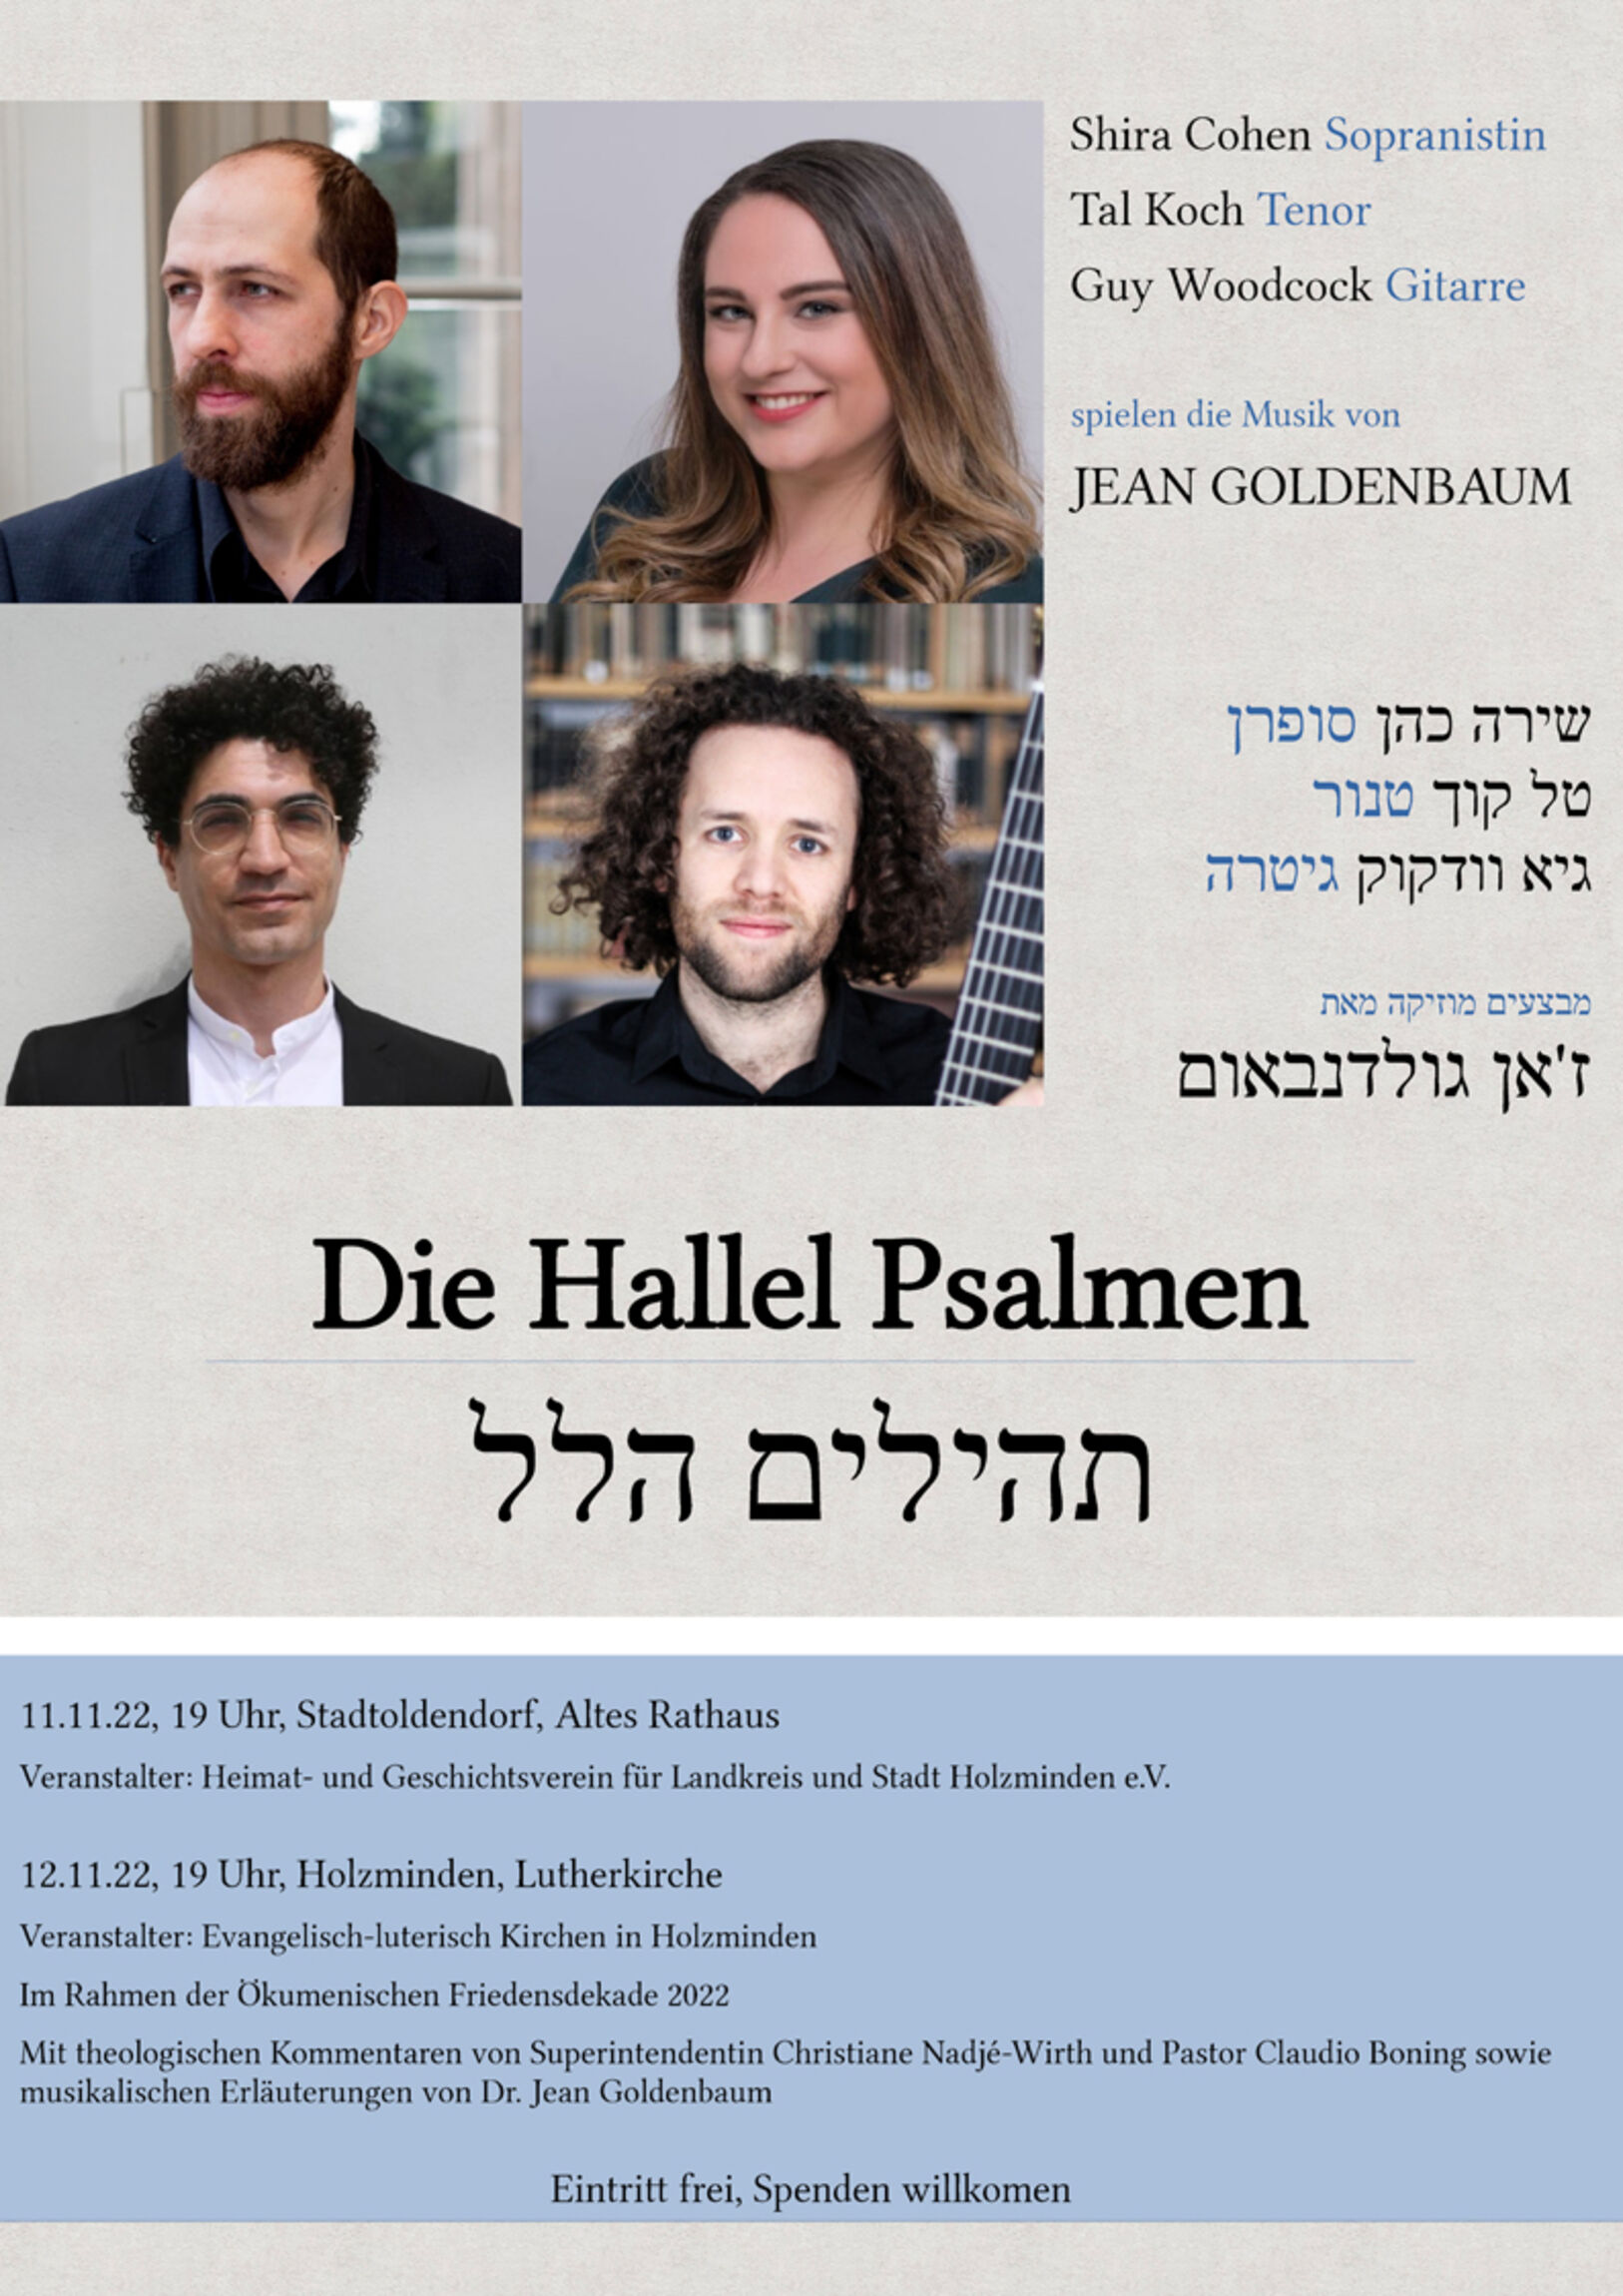 Konzertplakat 12. November 2022 in der Lutherkirche Holzminden